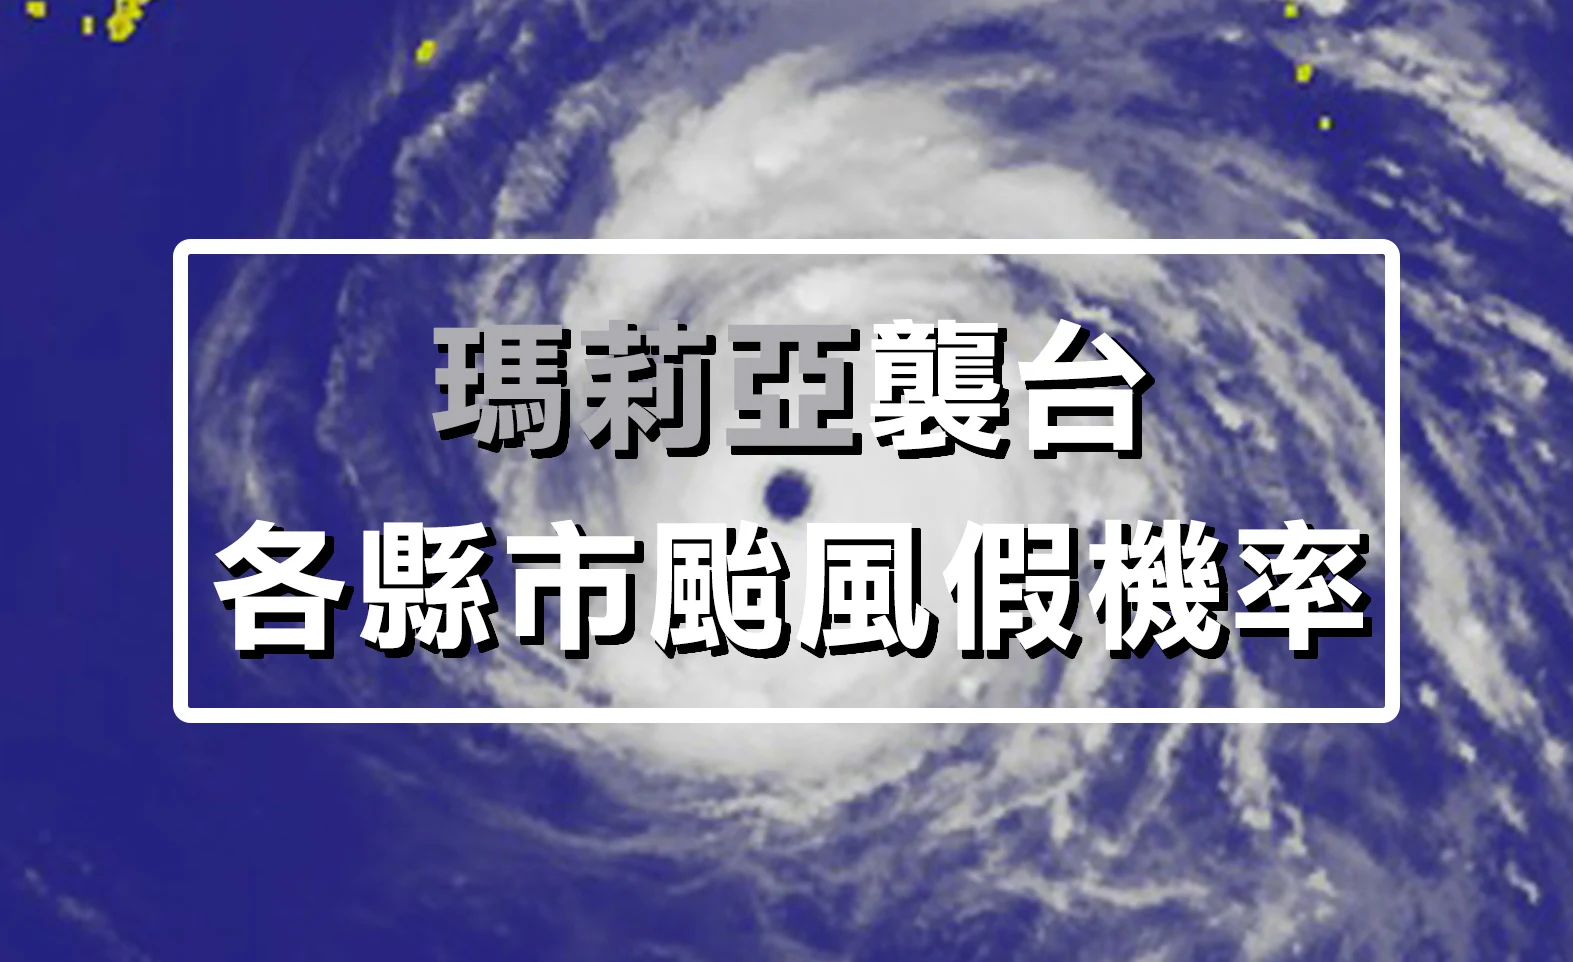 瑪莉亞颱風停班停課資訊